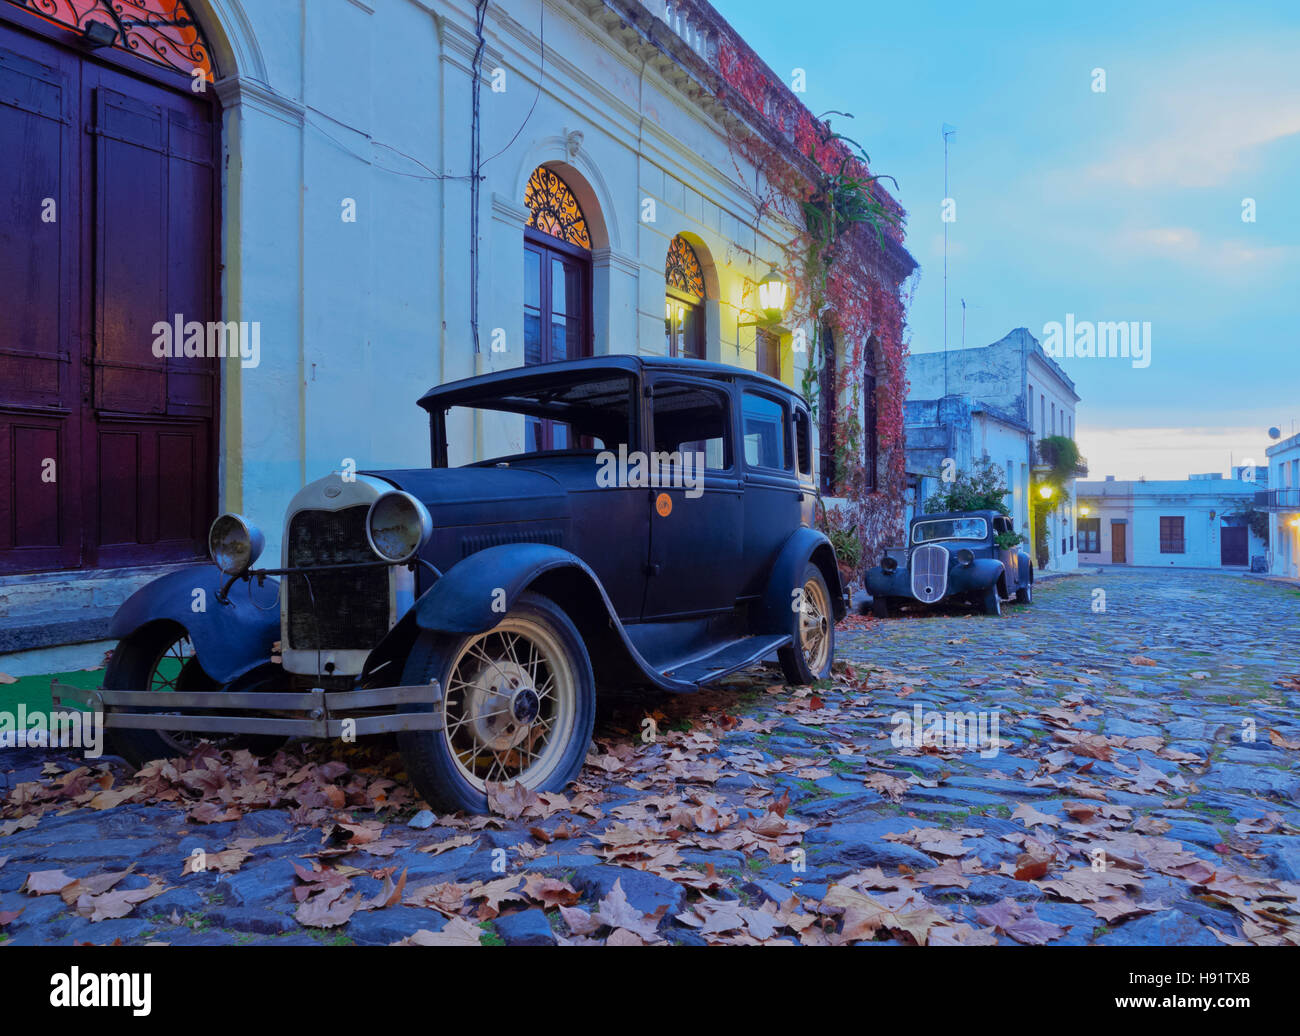 Uruguay, Colonia Department, Colonia del Sacramento, Vintage cars on the cobblestone lane of the historic quarter. Stock Photo